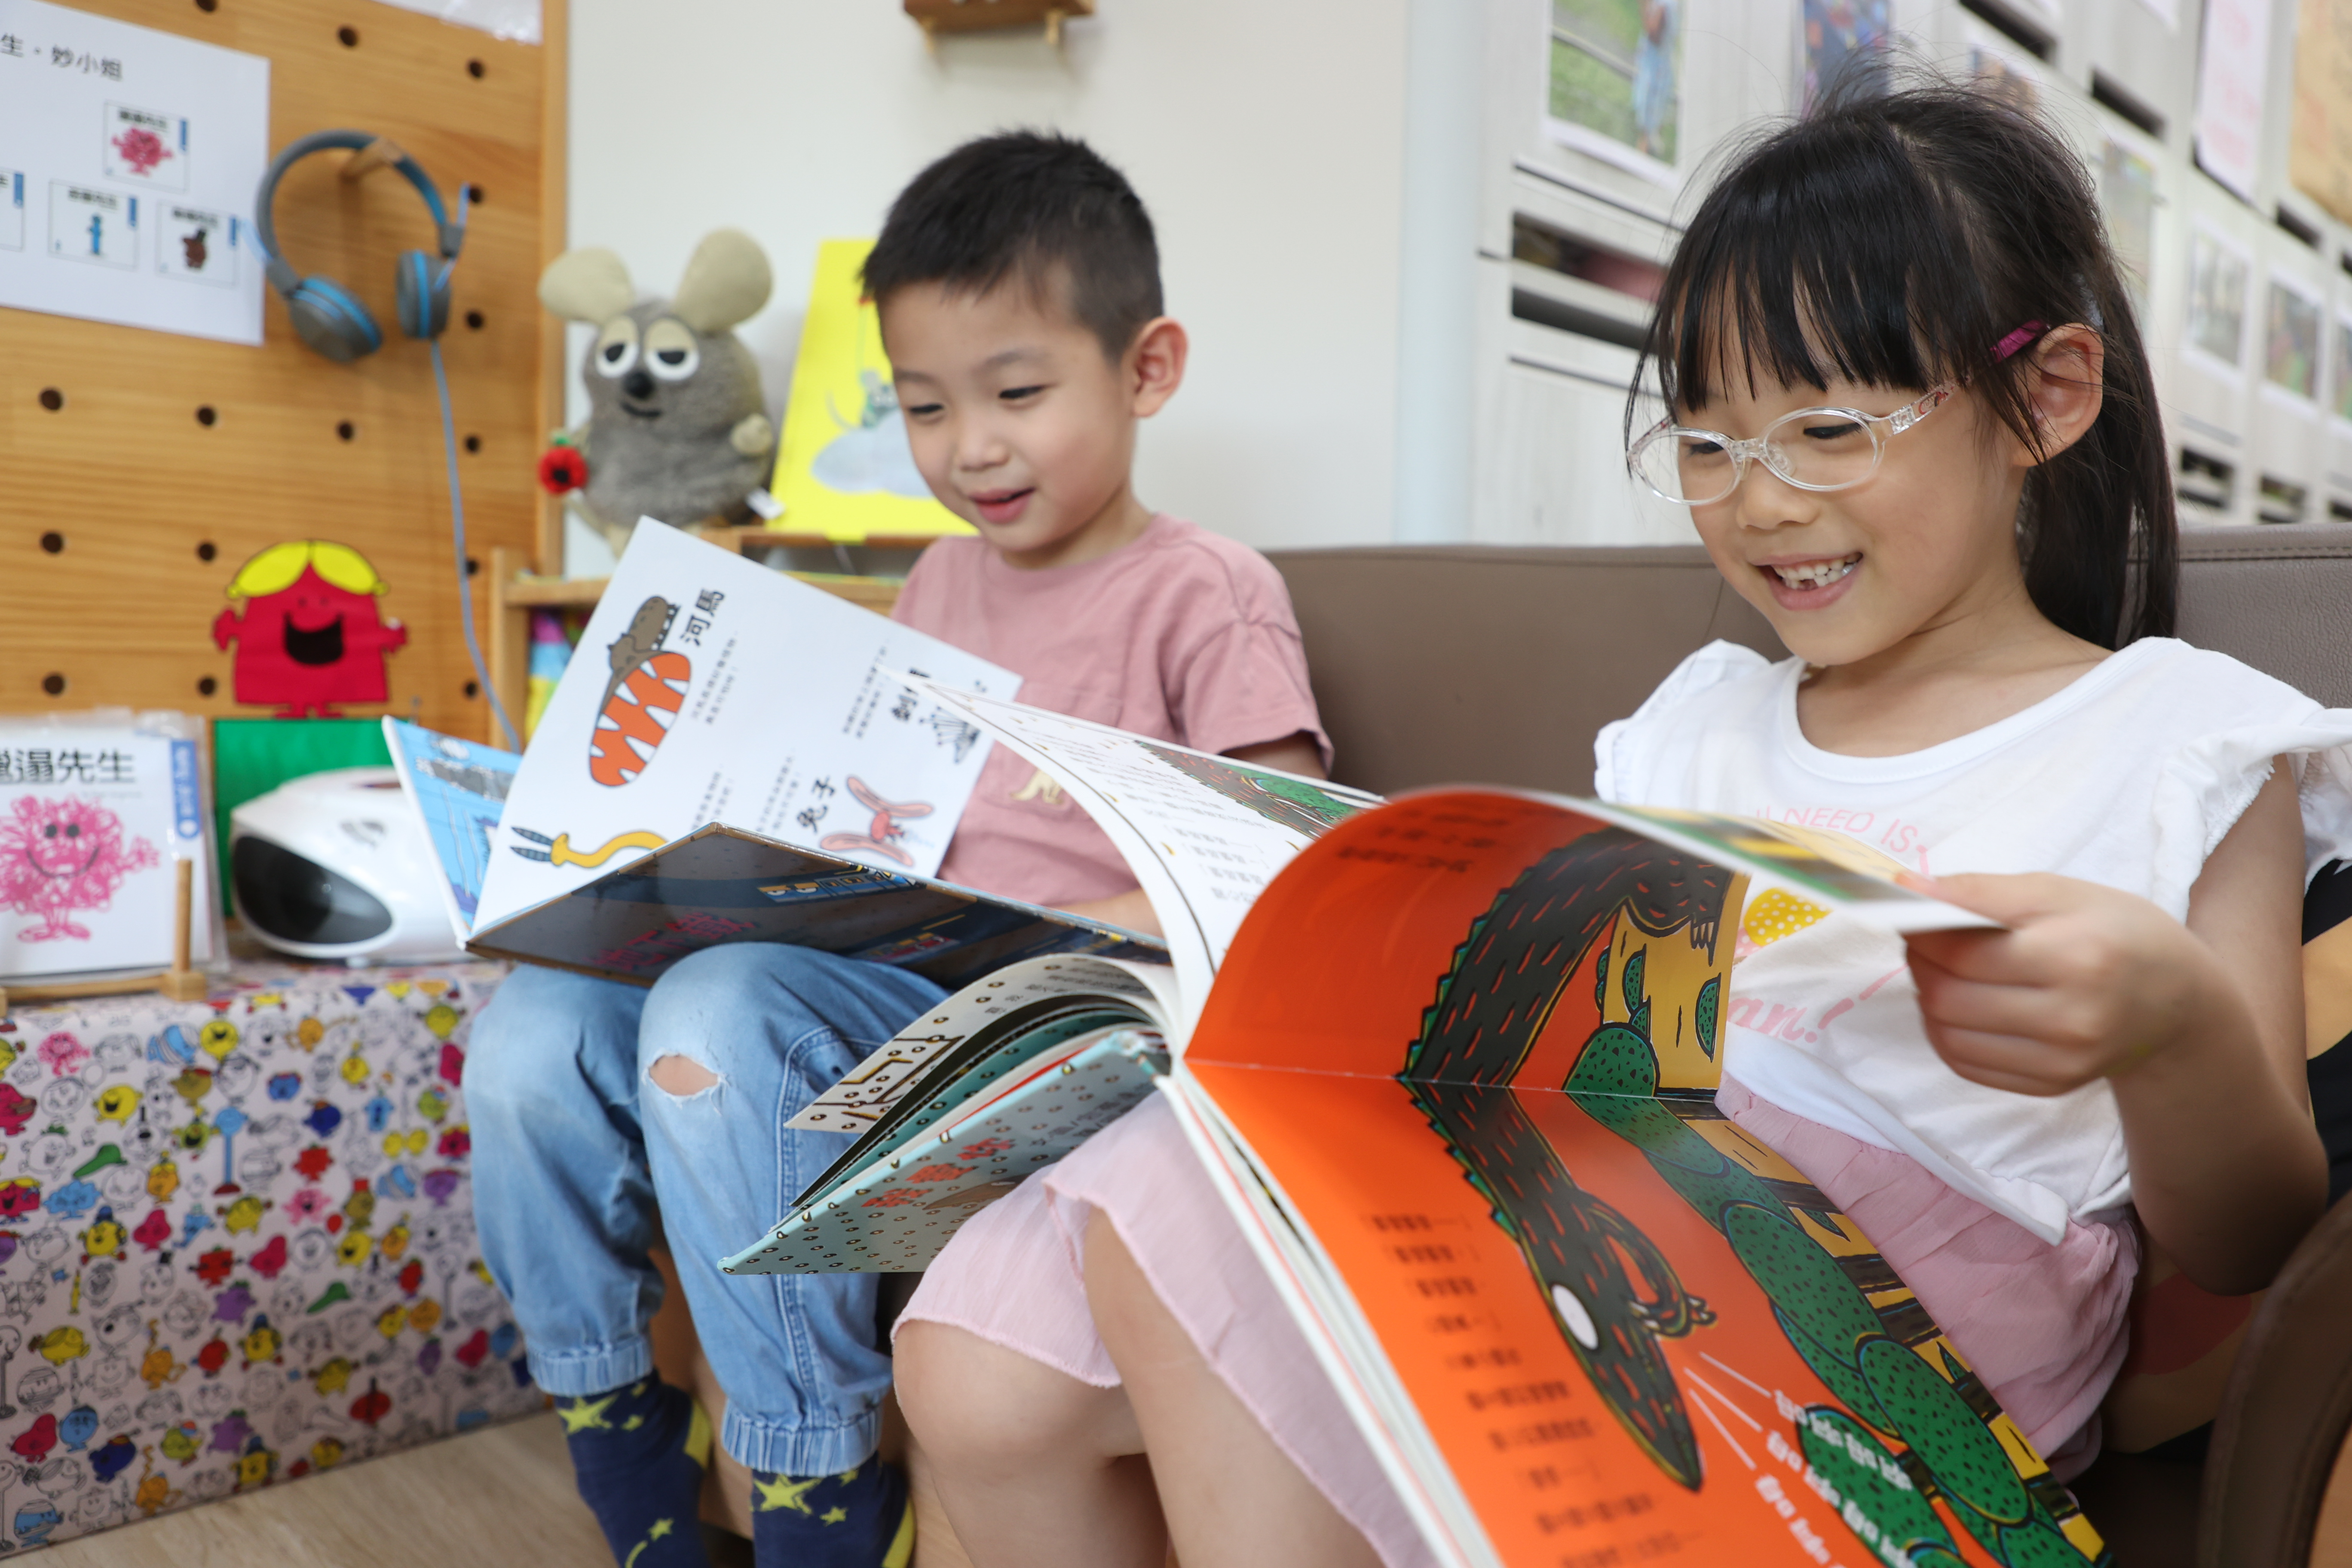 幼儿园内常见孩子们拿著书籍阅读。记者叶信菉／摄影